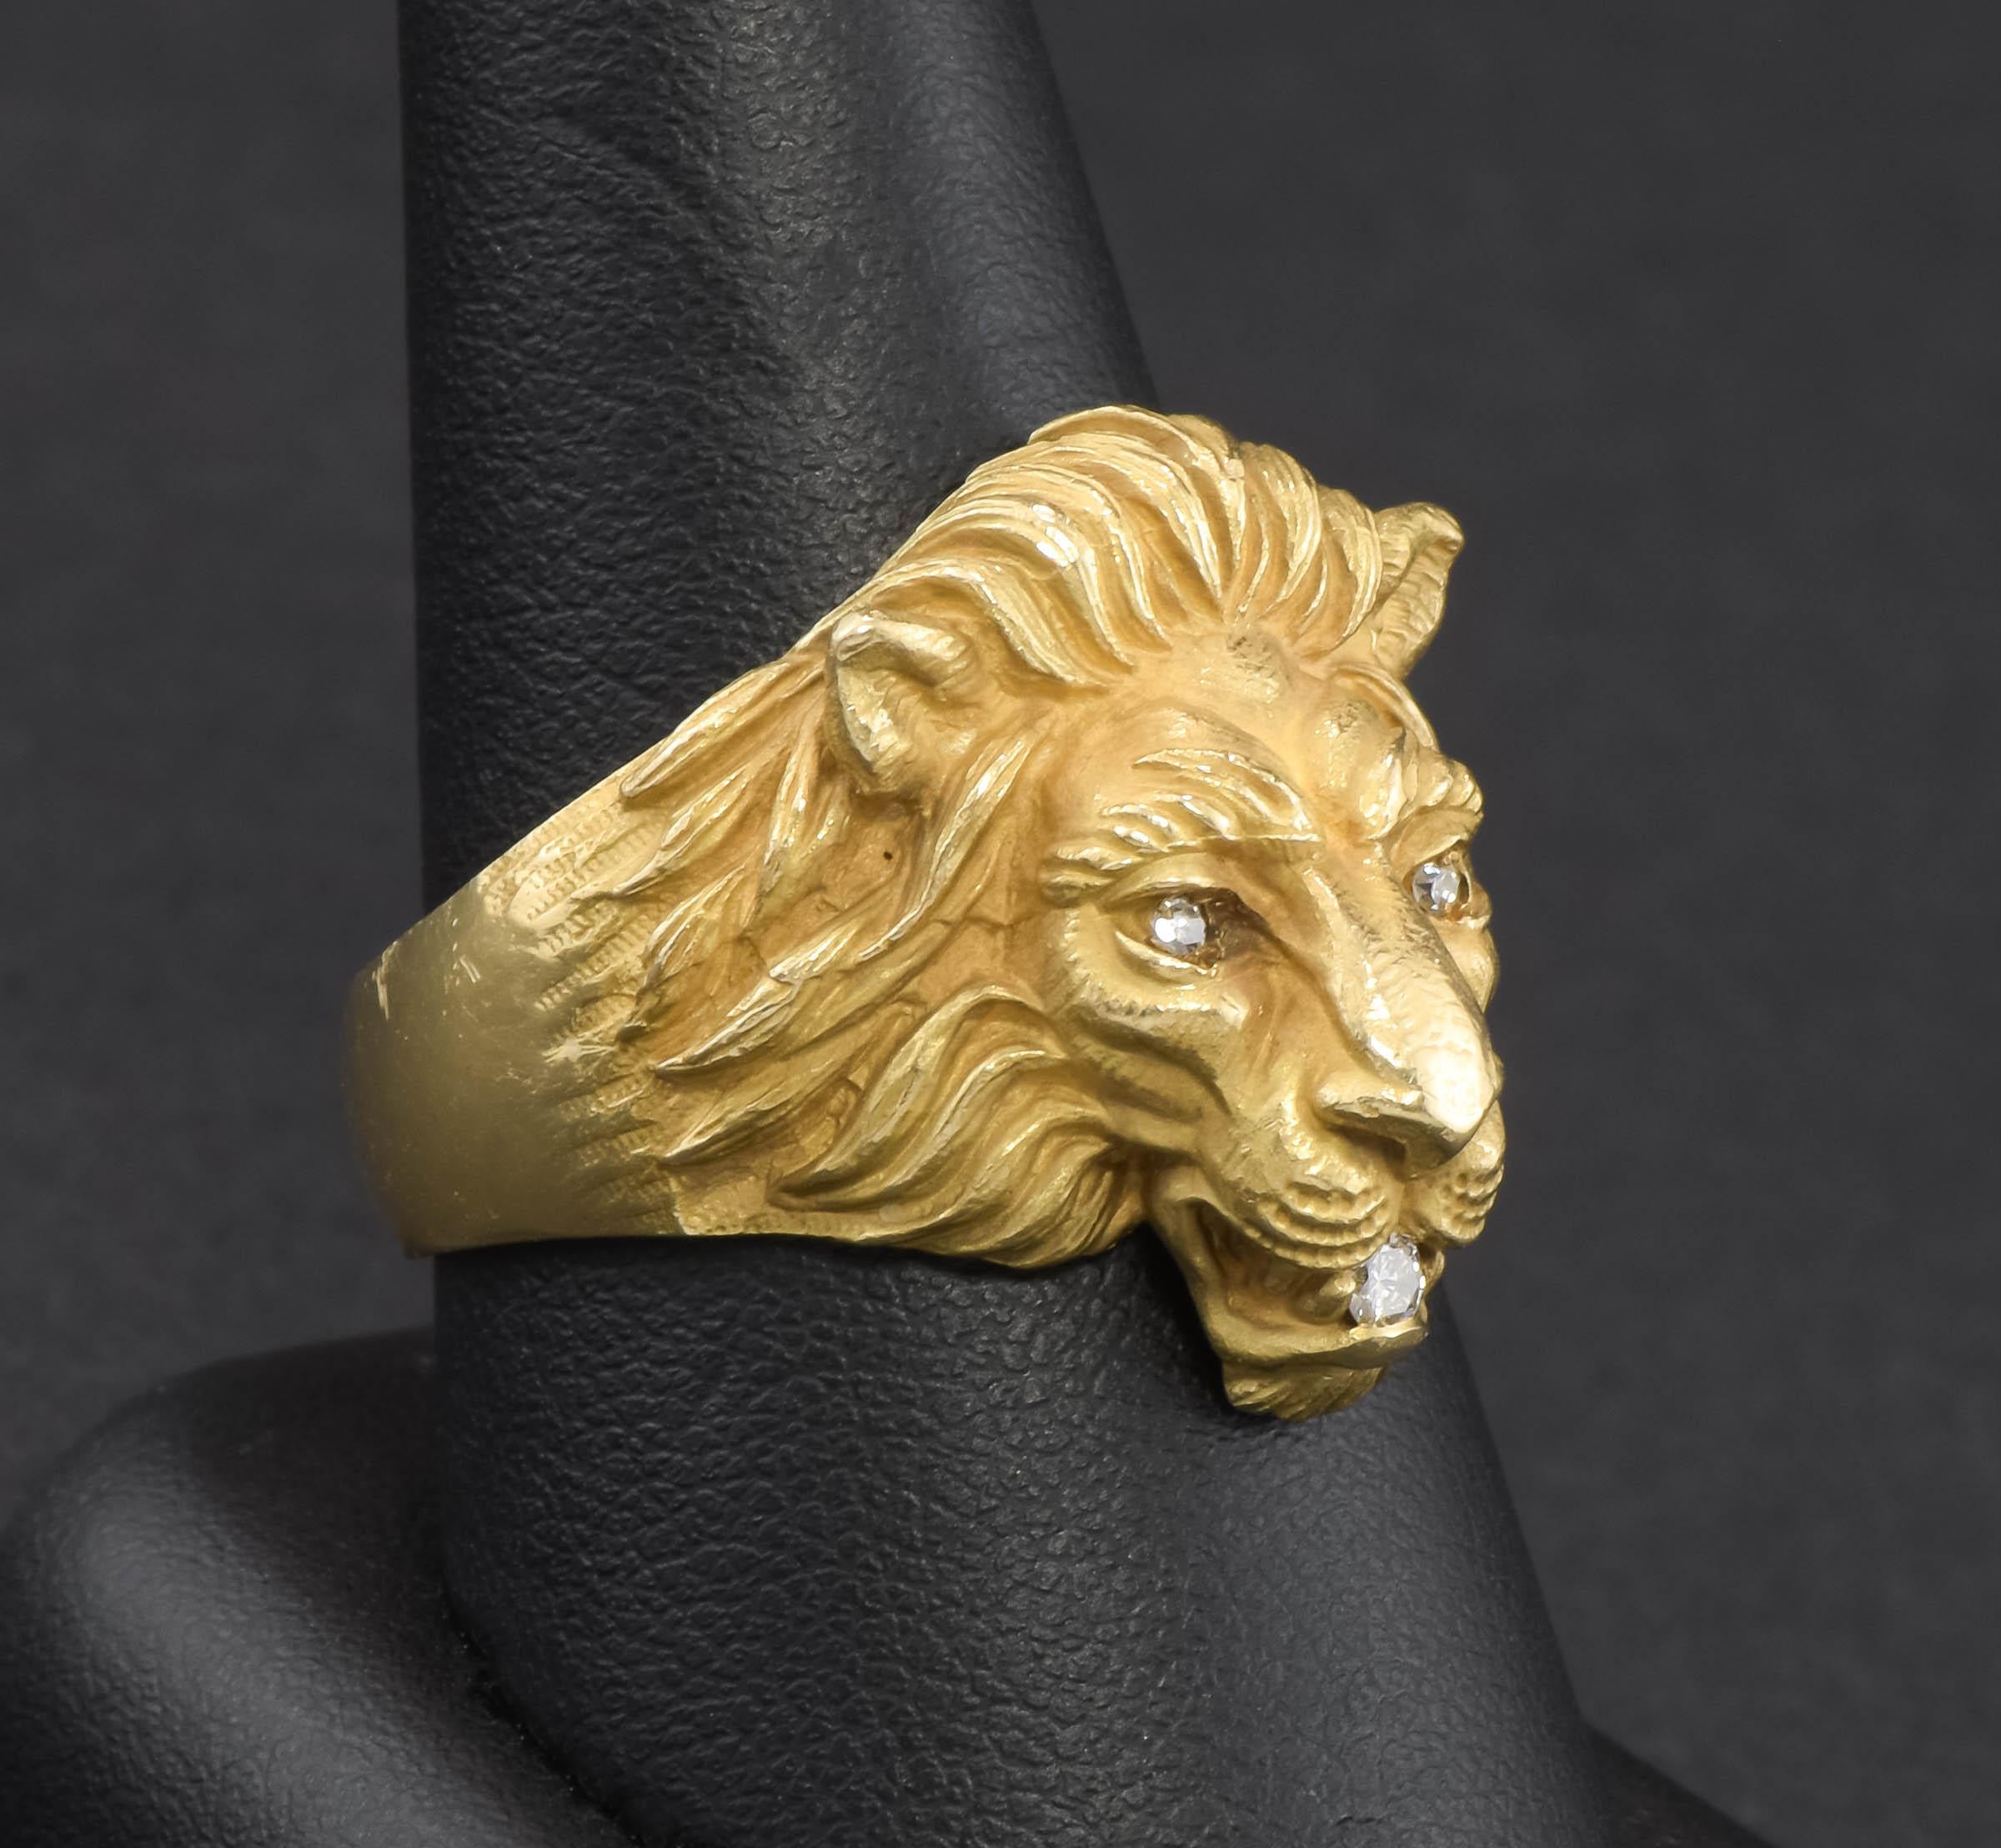 J'ai le plaisir de vous proposer l'une des bagues Lion en or originales de Baumstein Feder datant des années 1950.  Au fil des ans, de nombreux fabricants ont réalisé des copies de qualité inférieure de ce magnifique lion. Lorsque l'on voit les